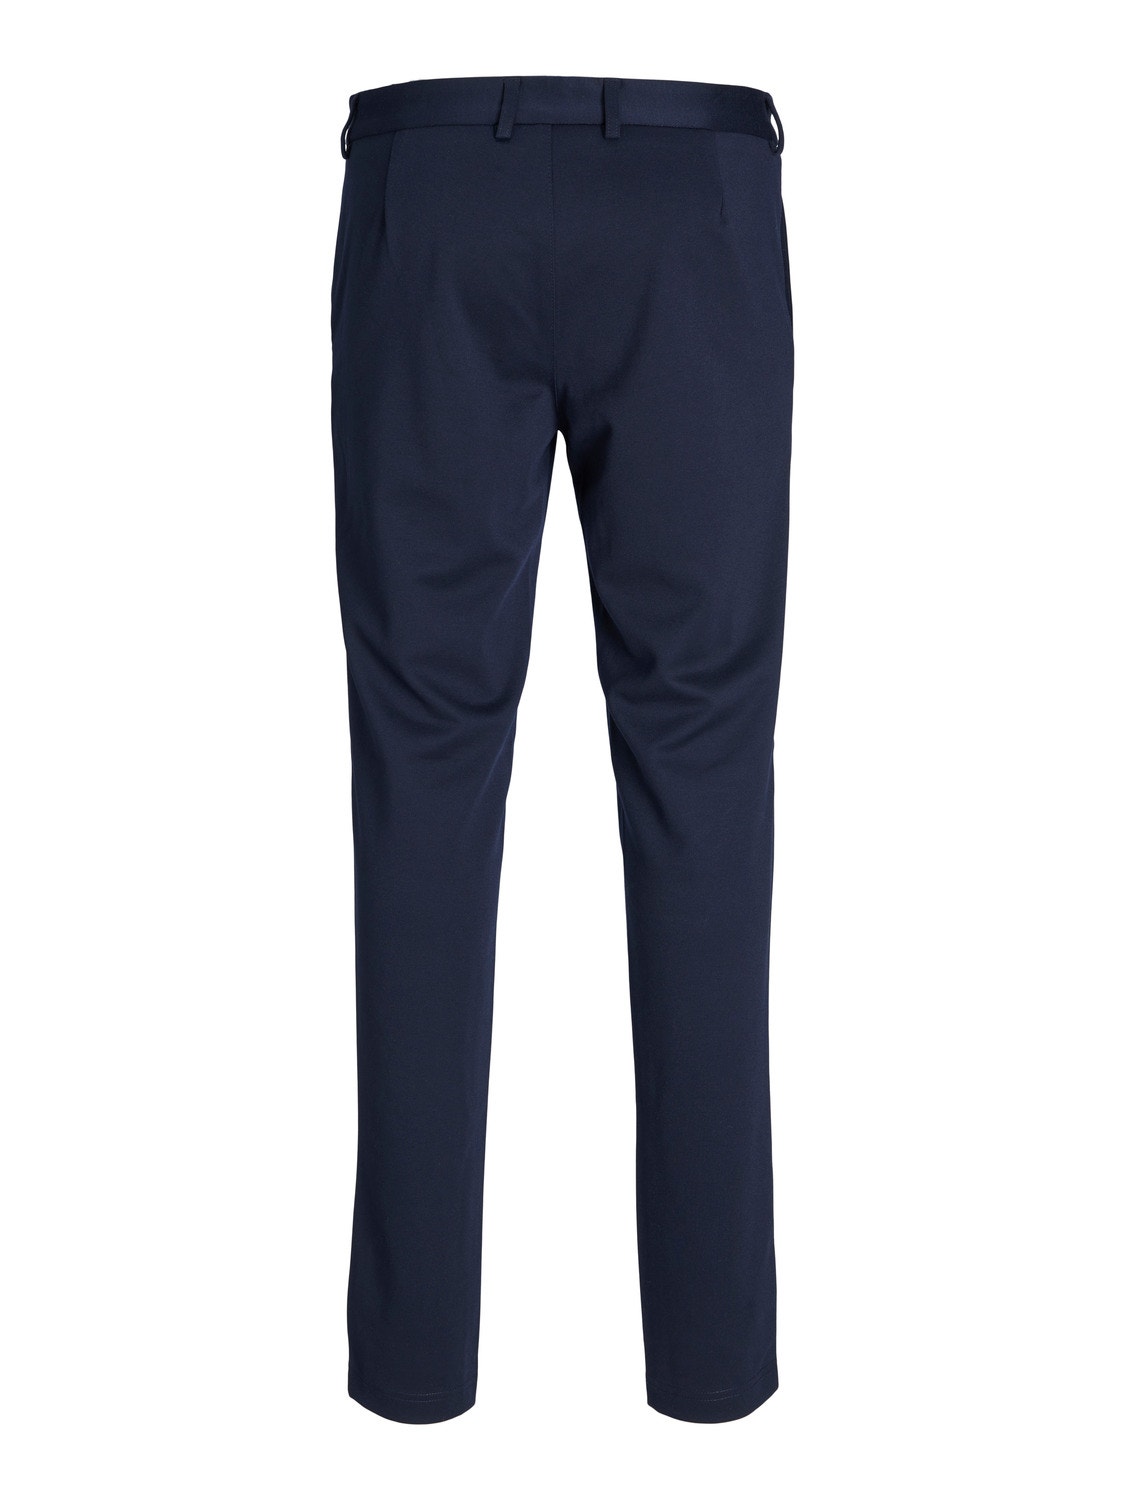 Jack & Jones JPRCLEAN Slim Fit Tailored Trousers -Dark Navy - 12205667